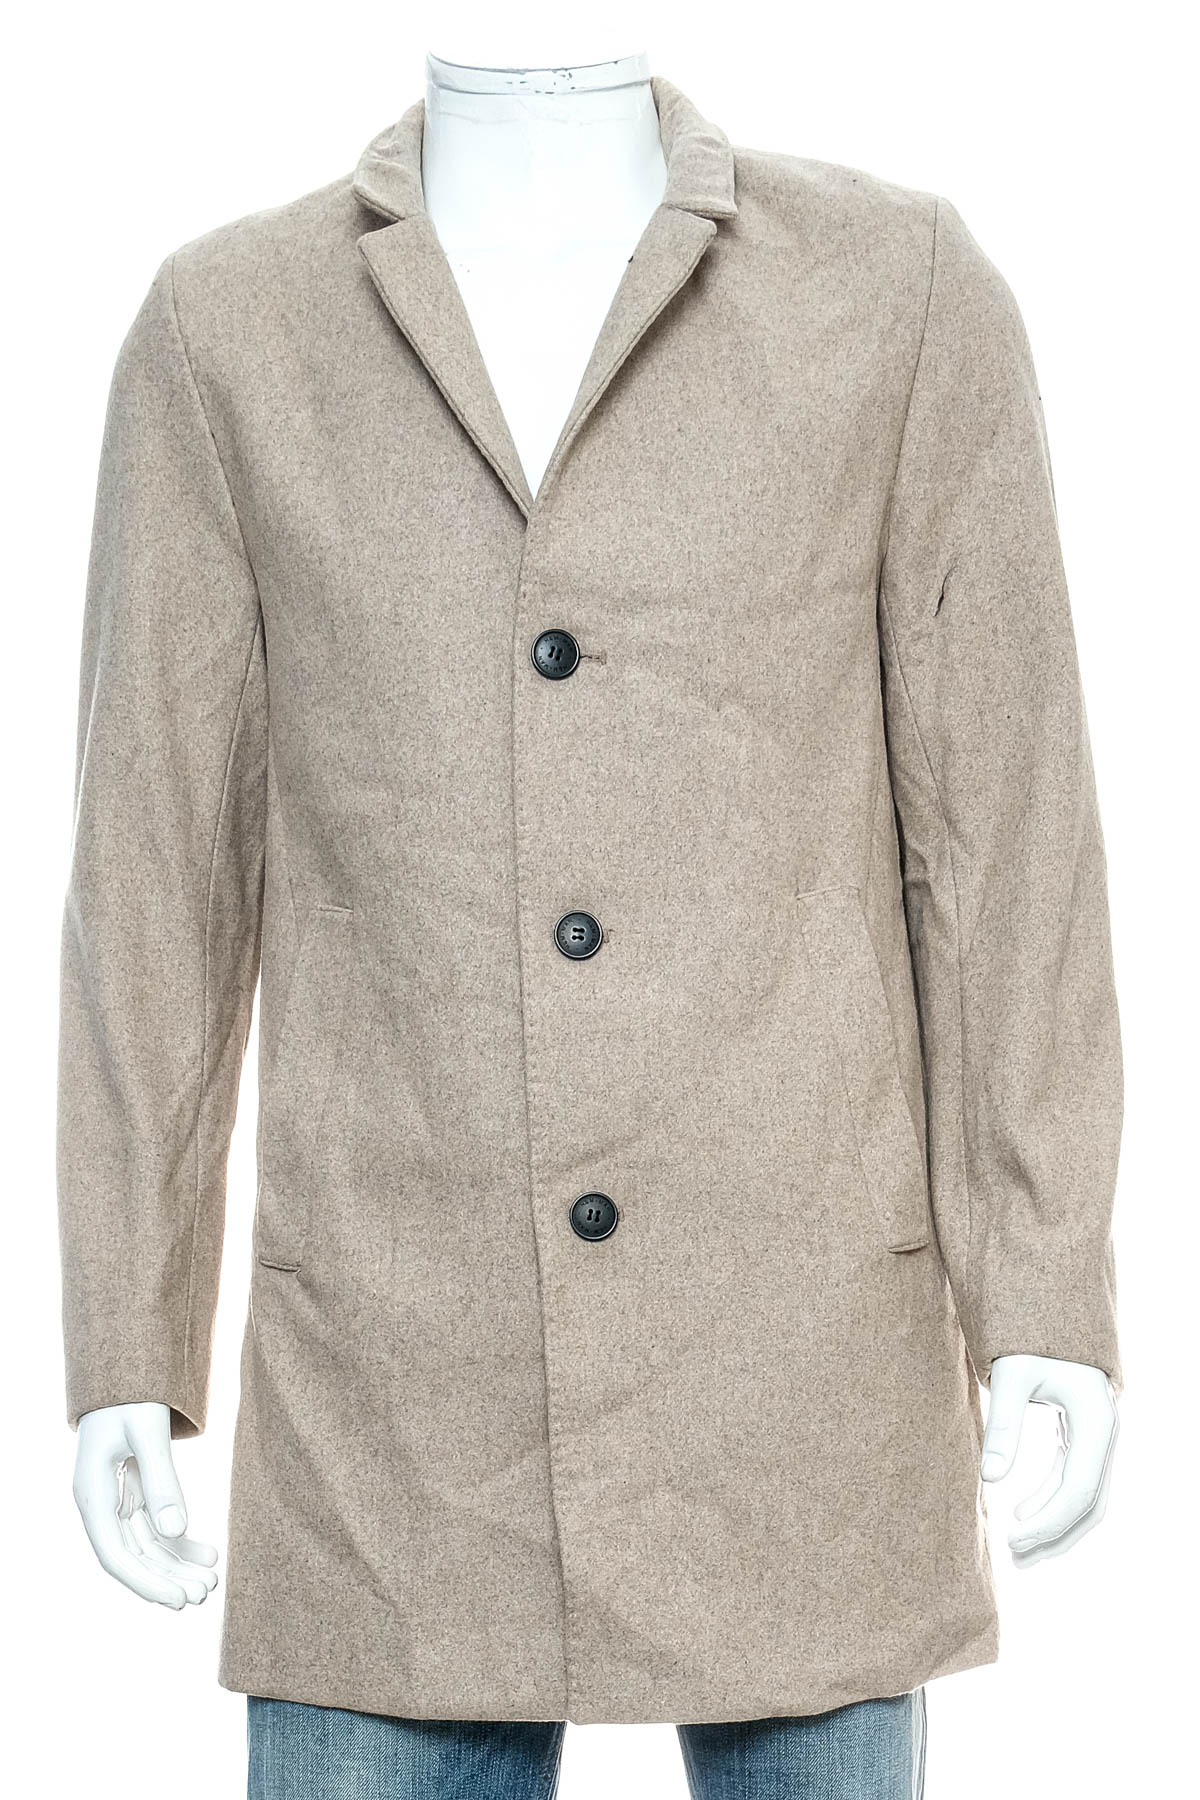 Men's coat - H&M - 0